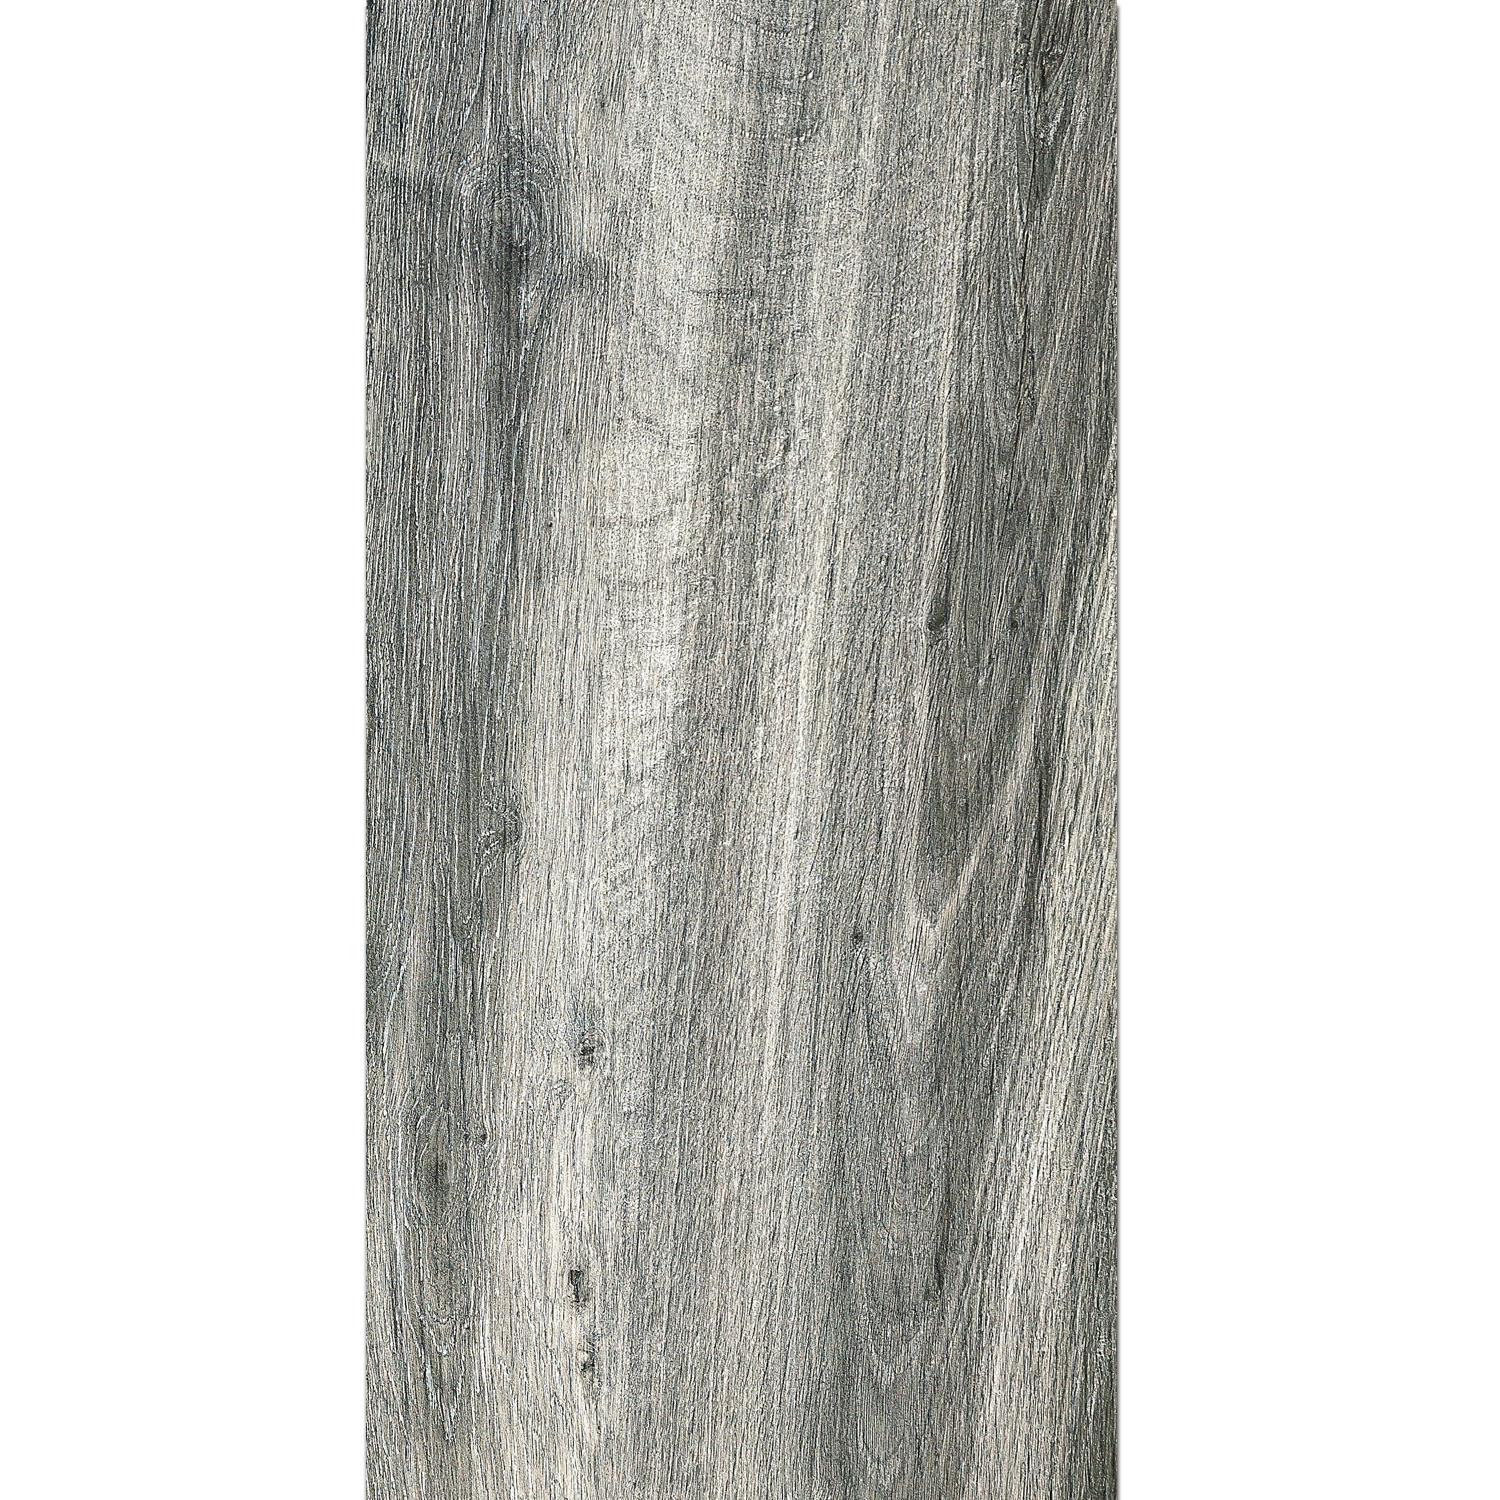 Ploče Za Terasu Starwood Imitacija Drva Grey 45x90cm